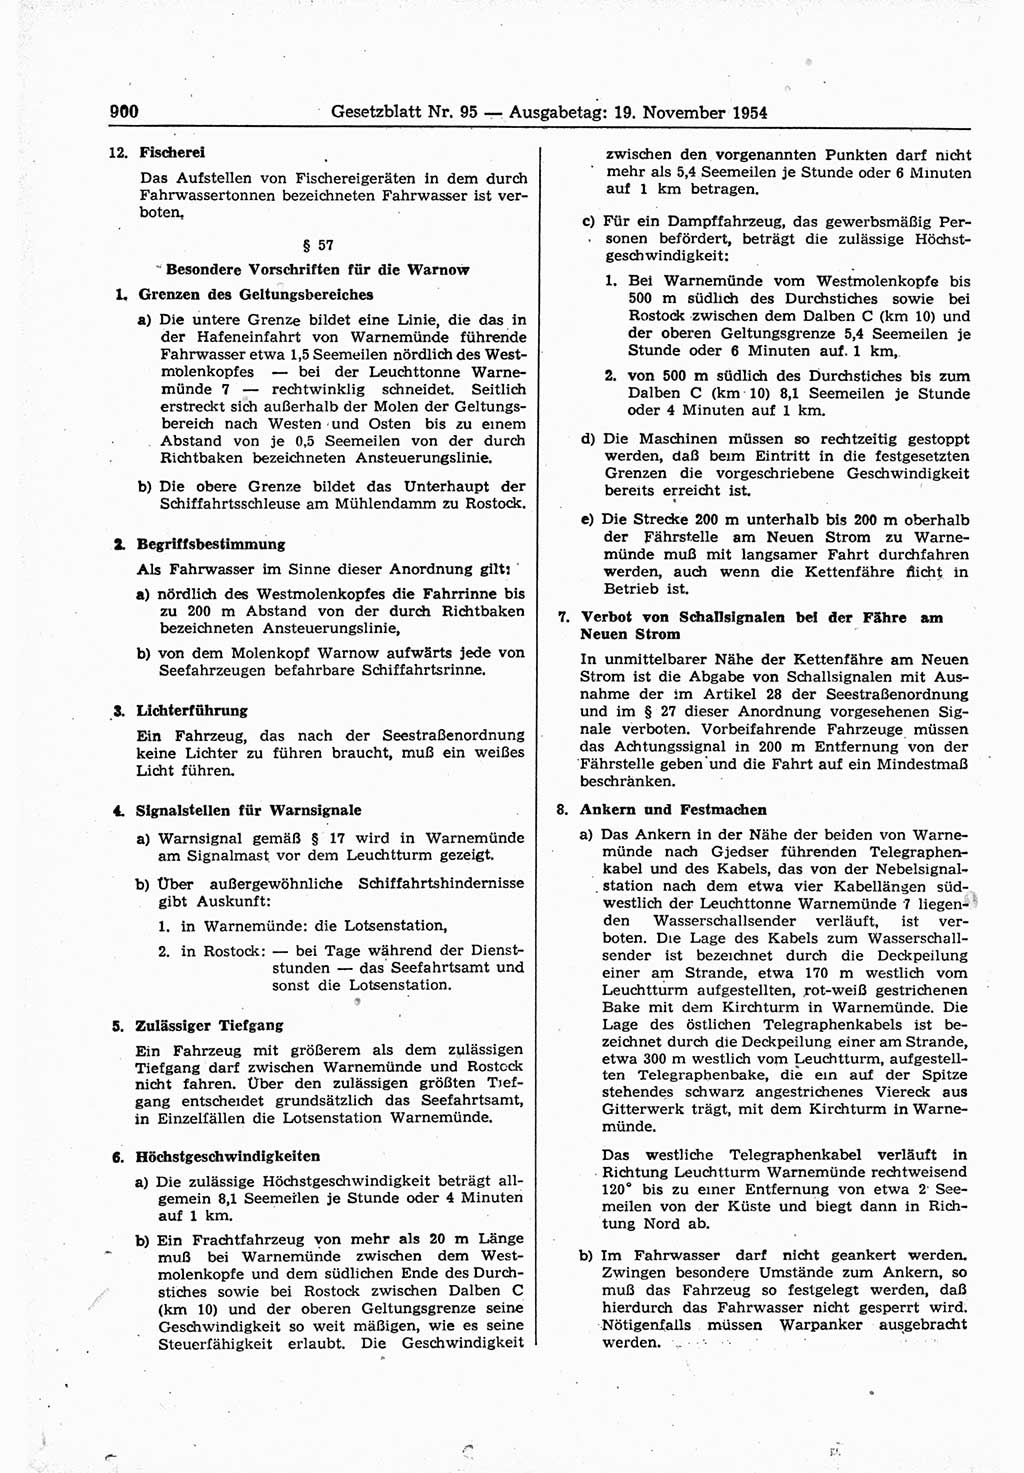 Gesetzblatt (GBl.) der Deutschen Demokratischen Republik (DDR) 1954, Seite 900 (GBl. DDR 1954, S. 900)